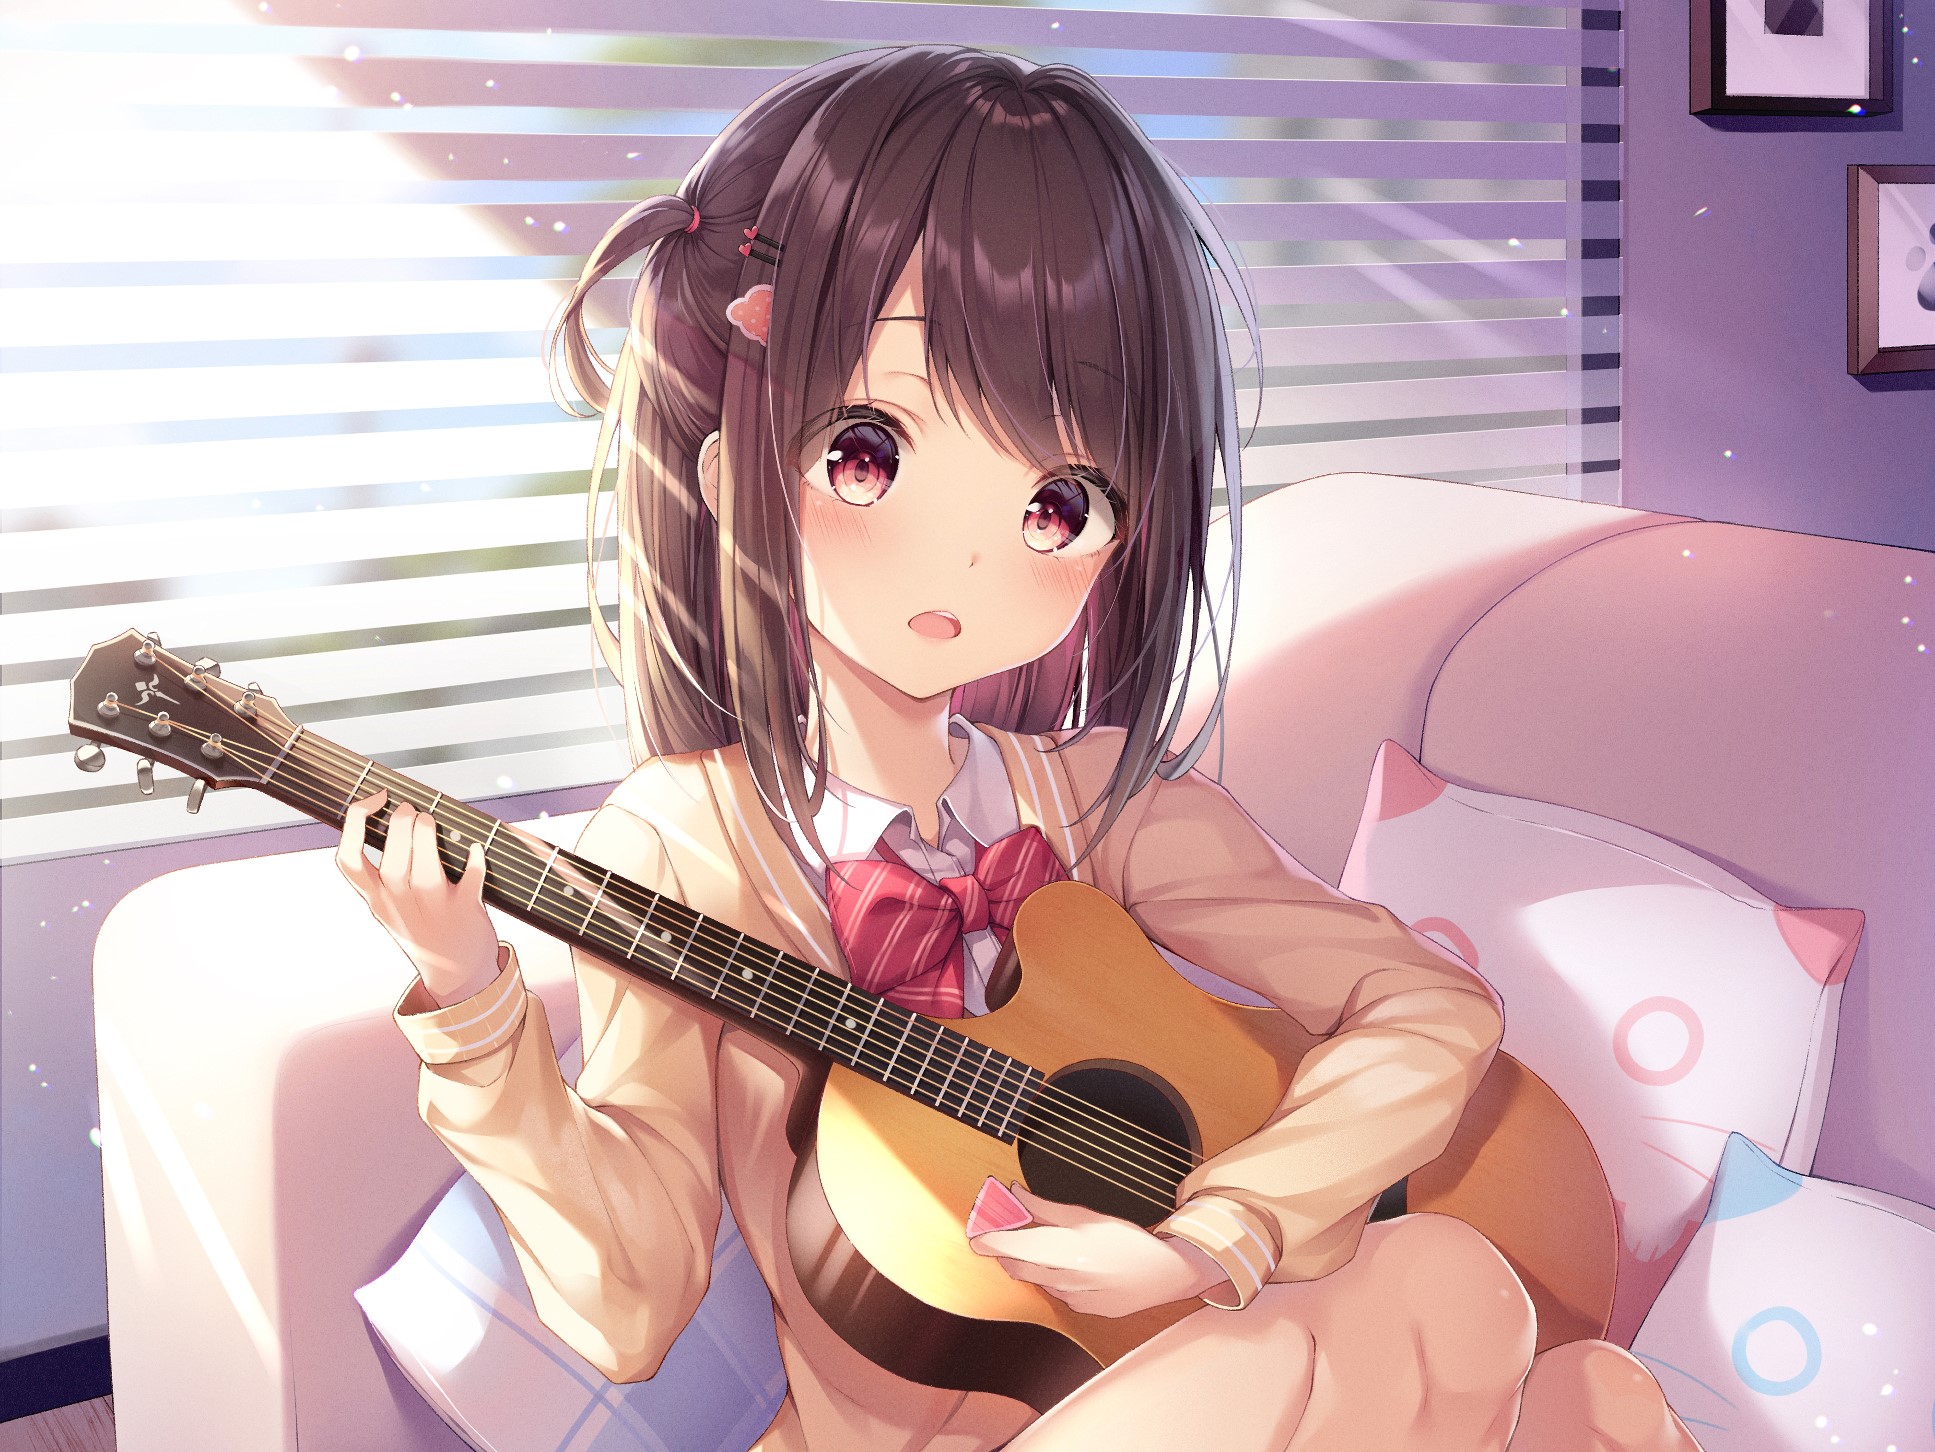 Anime girl playing the guitar